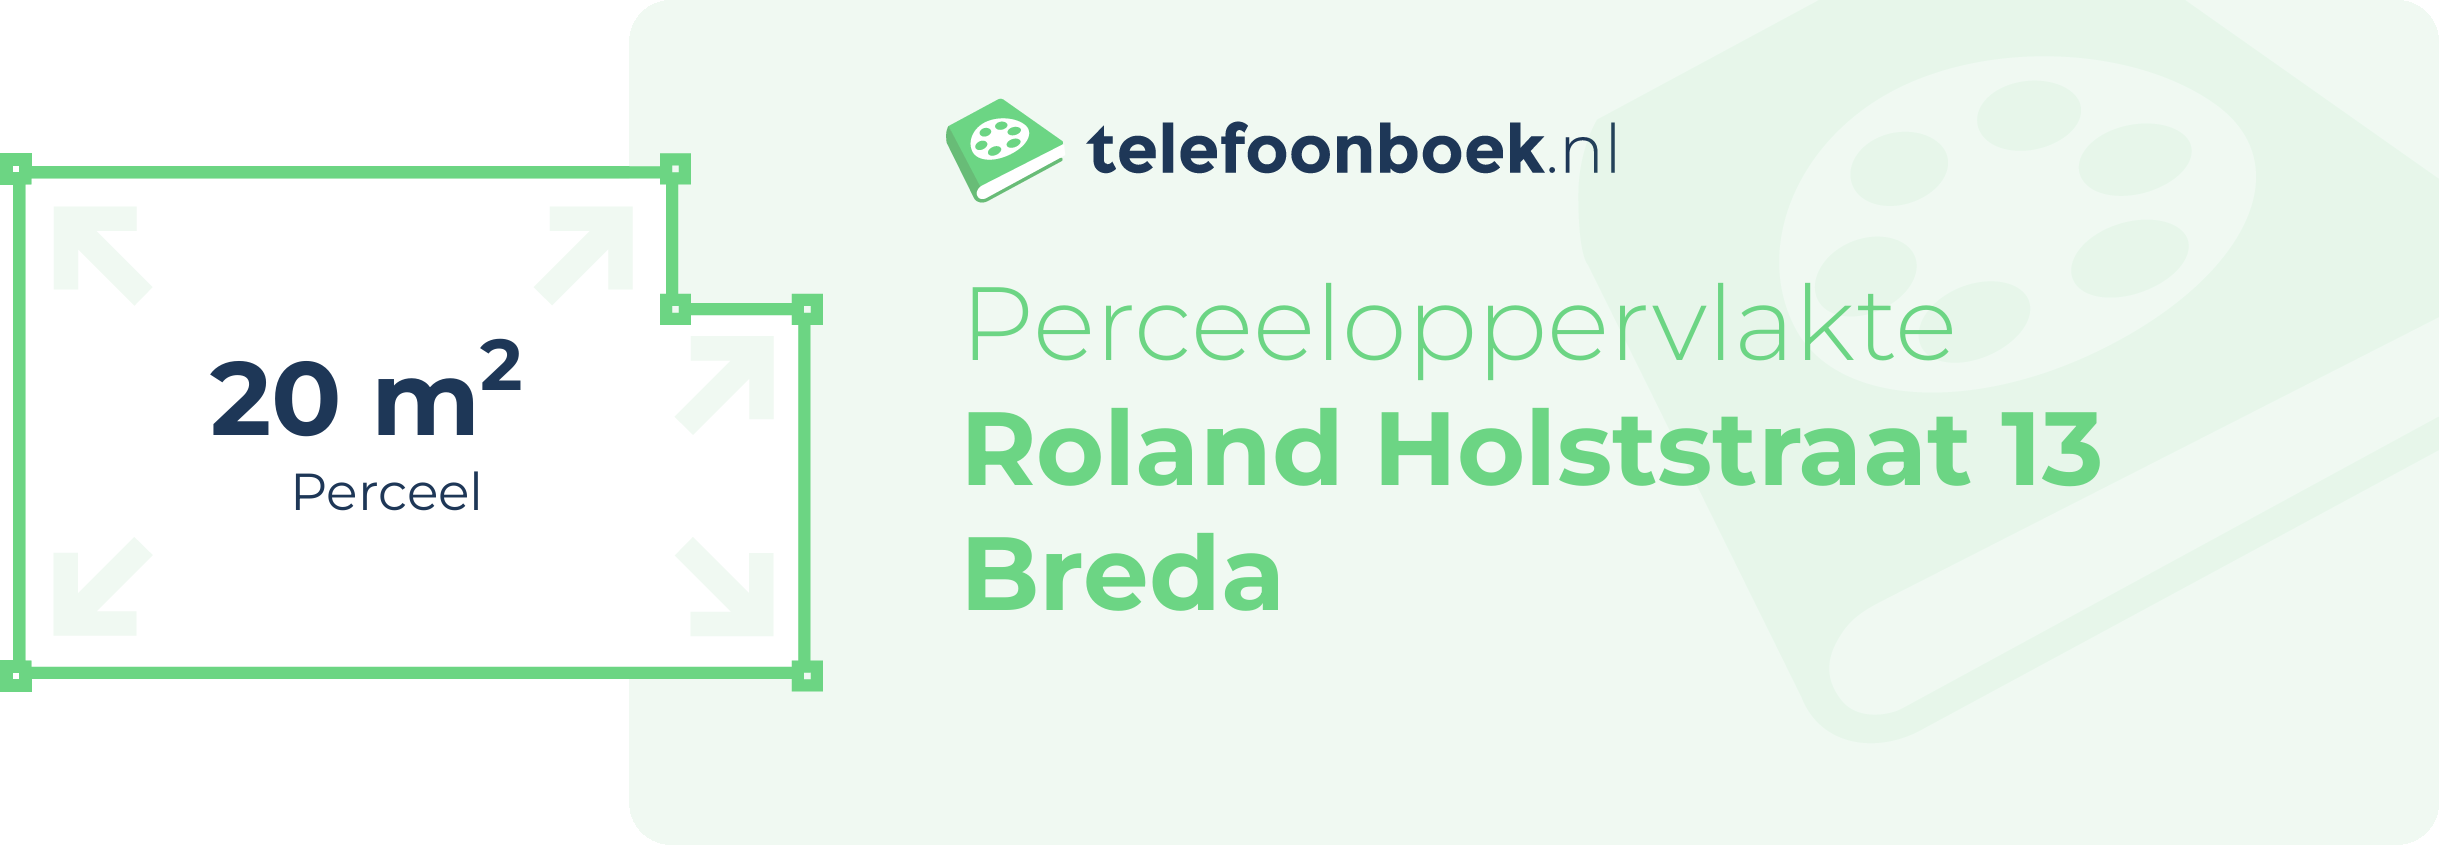 Perceeloppervlakte Roland Holststraat 13 Breda